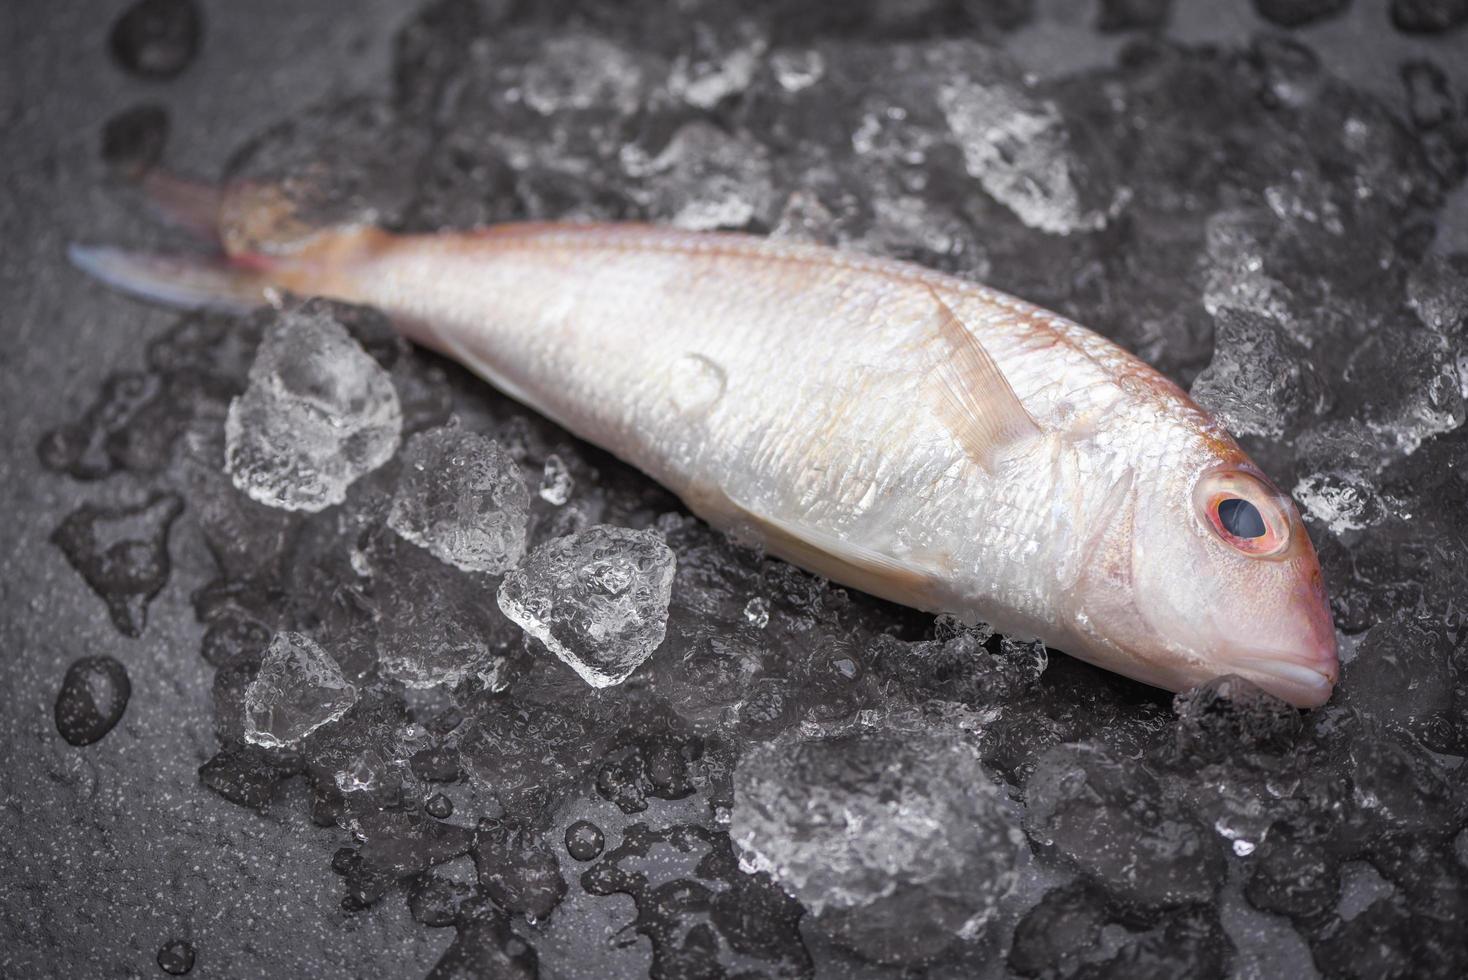 pescado fresco en el mercado de hielo - besugo marisco pescado congelado foto